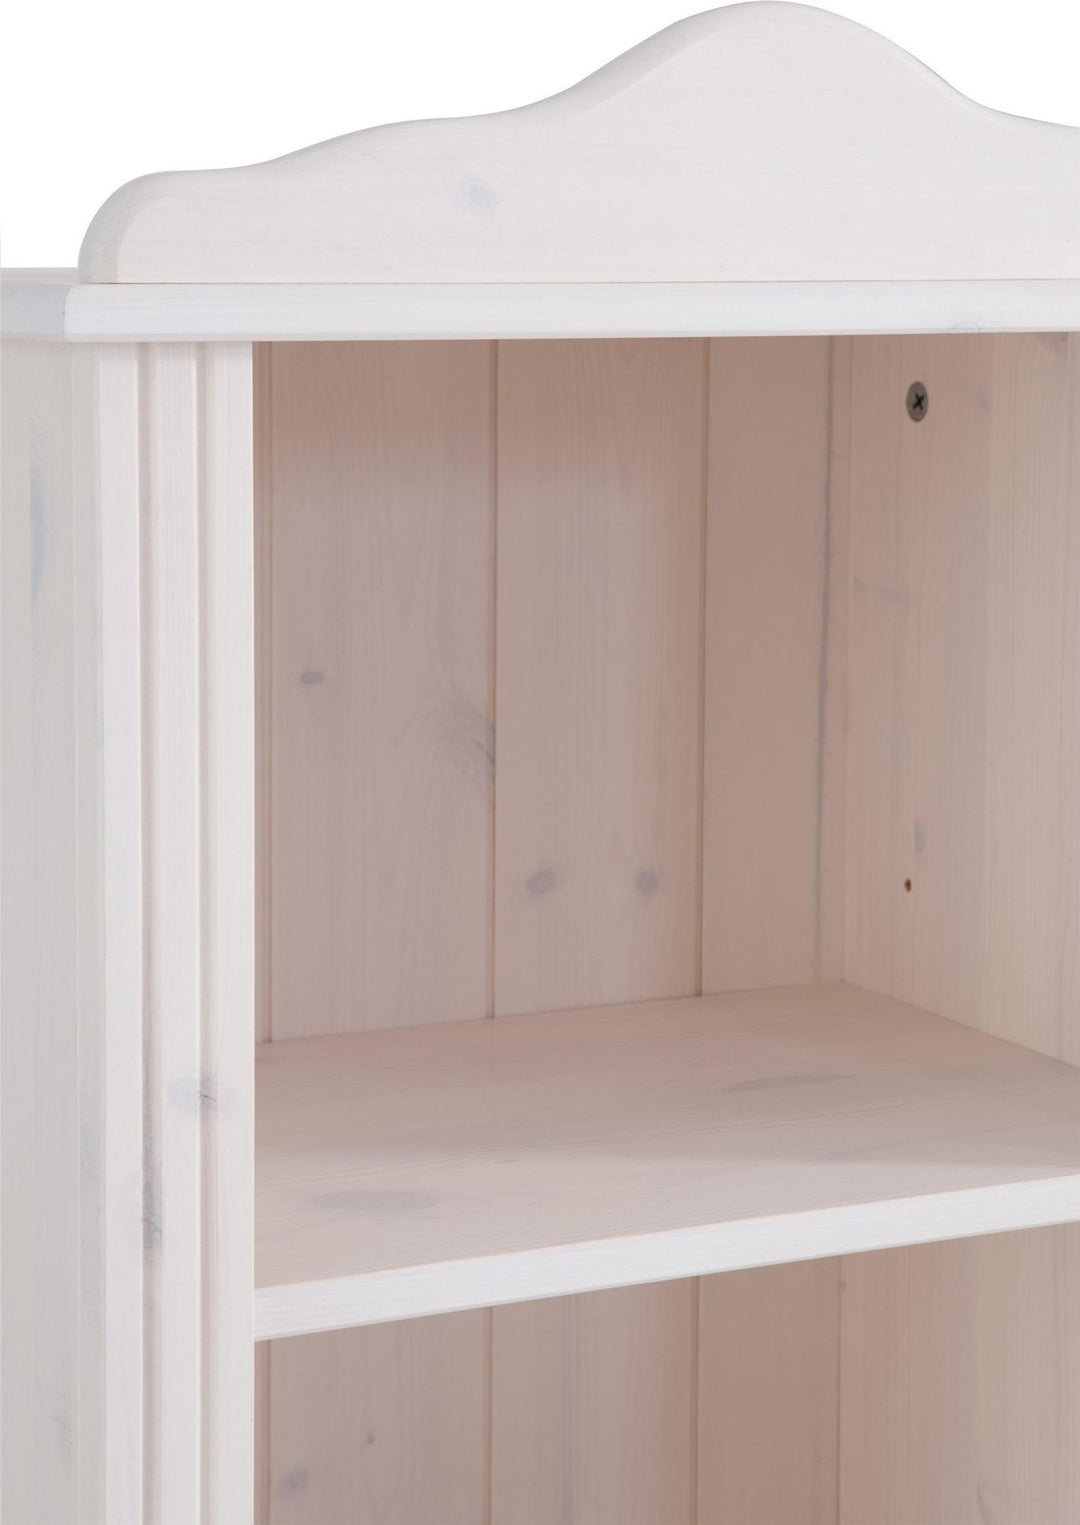 Stylish 5 Shelf Bookcase - White